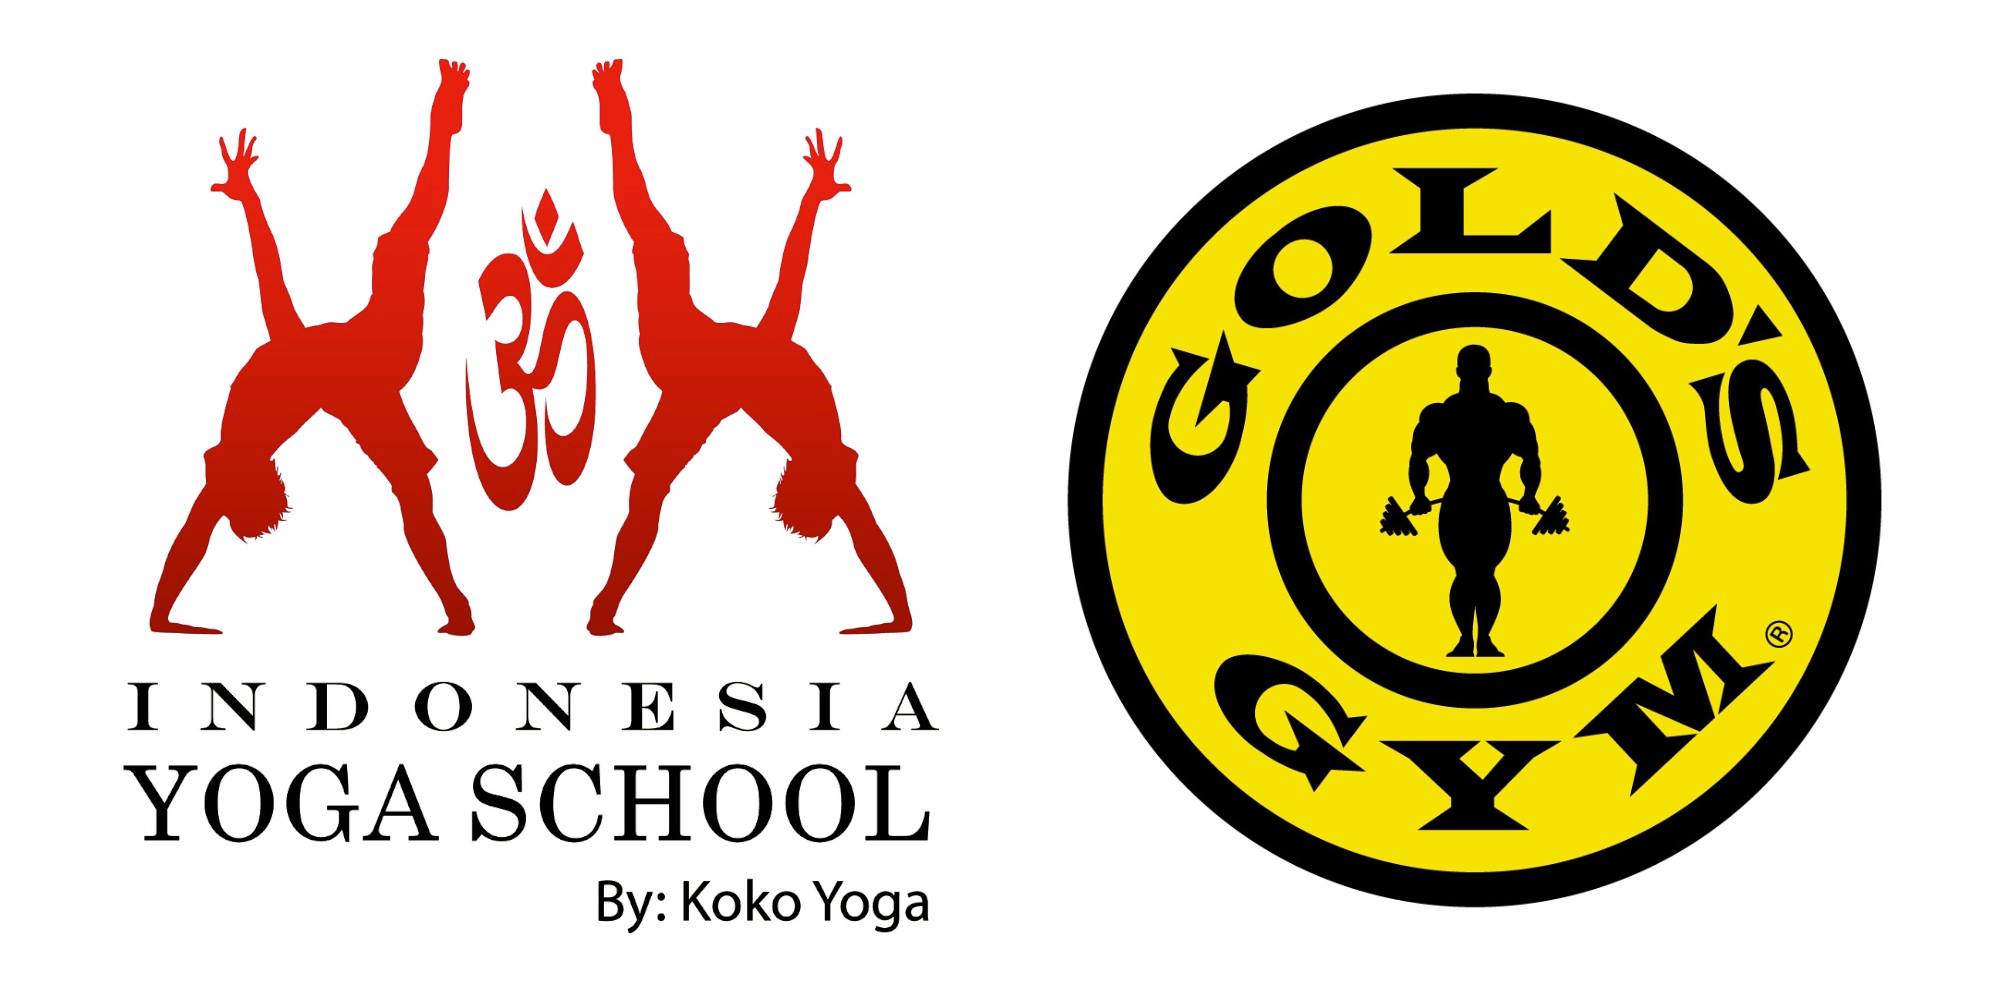 Koko Yoga School Image